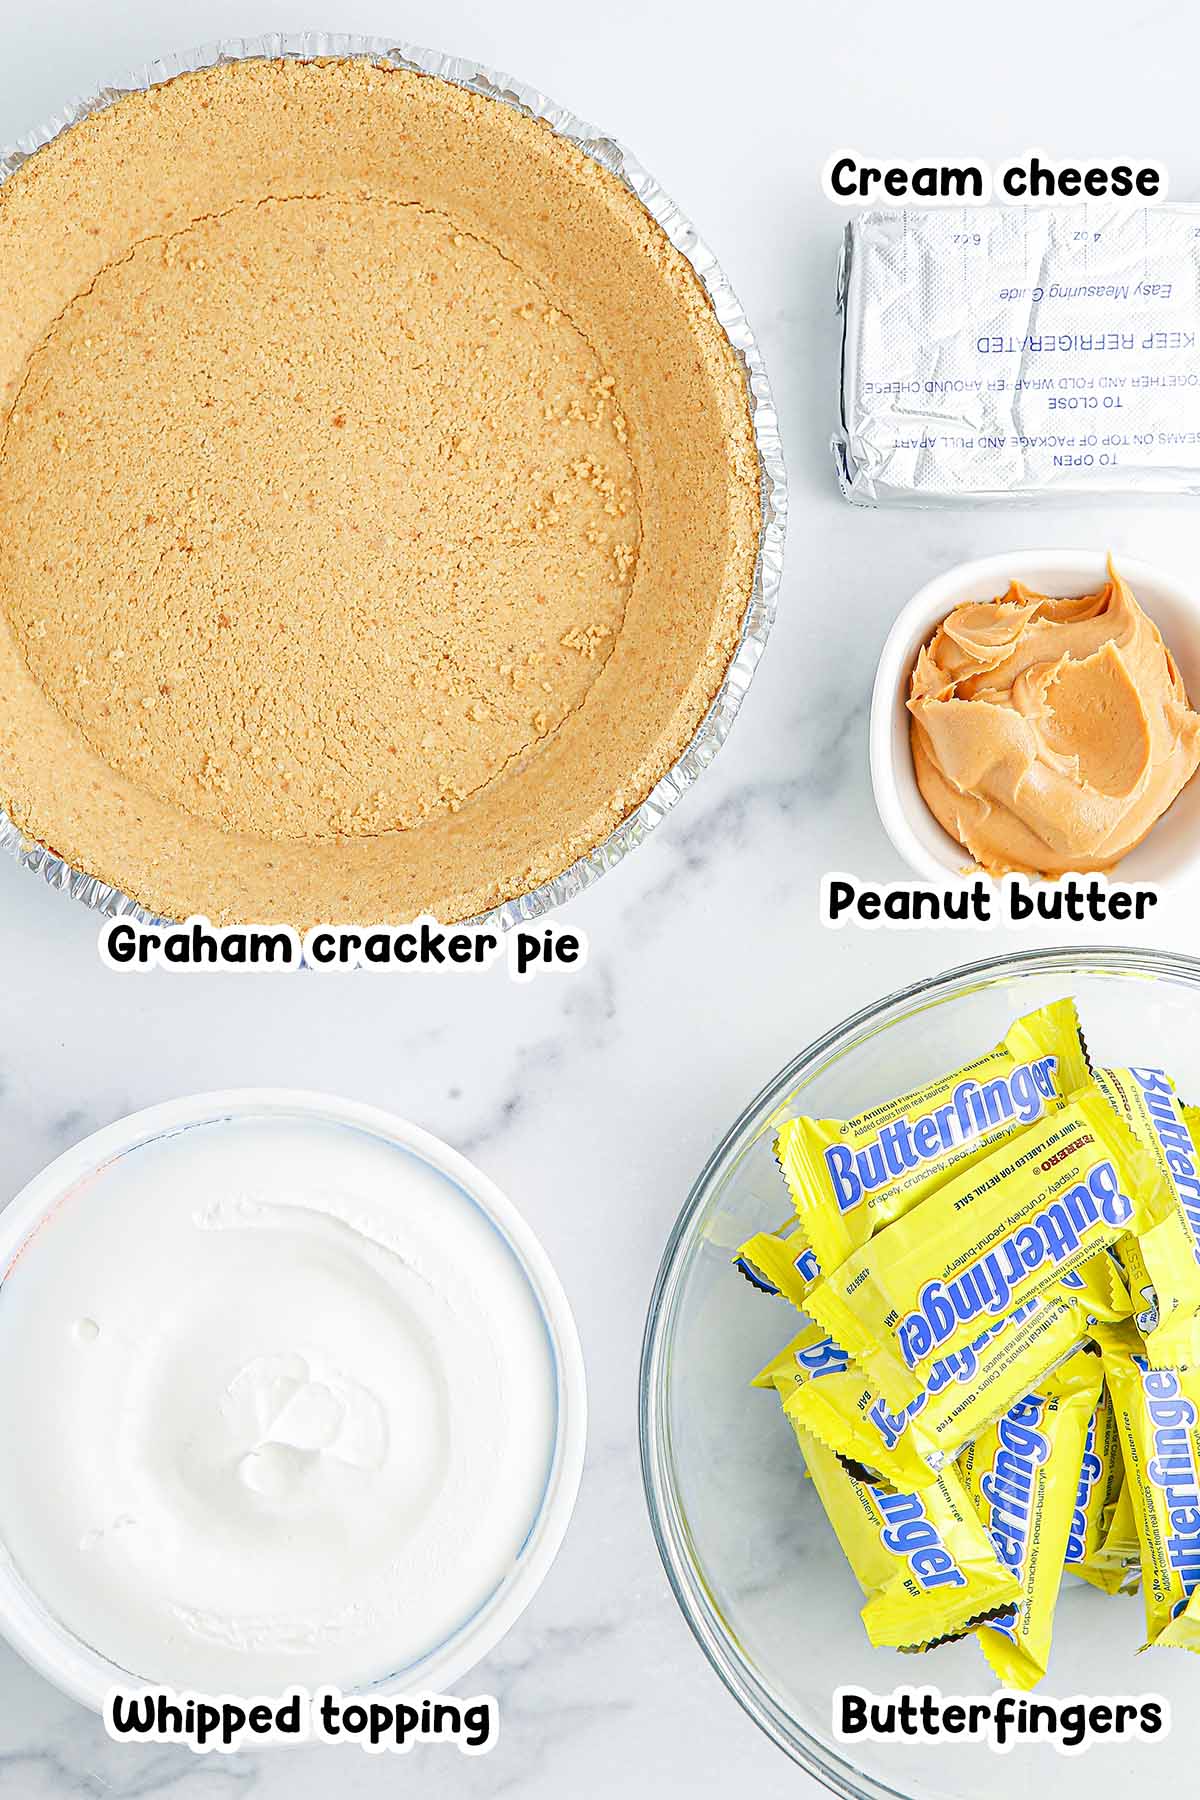 Butterfinger Pie ingredients